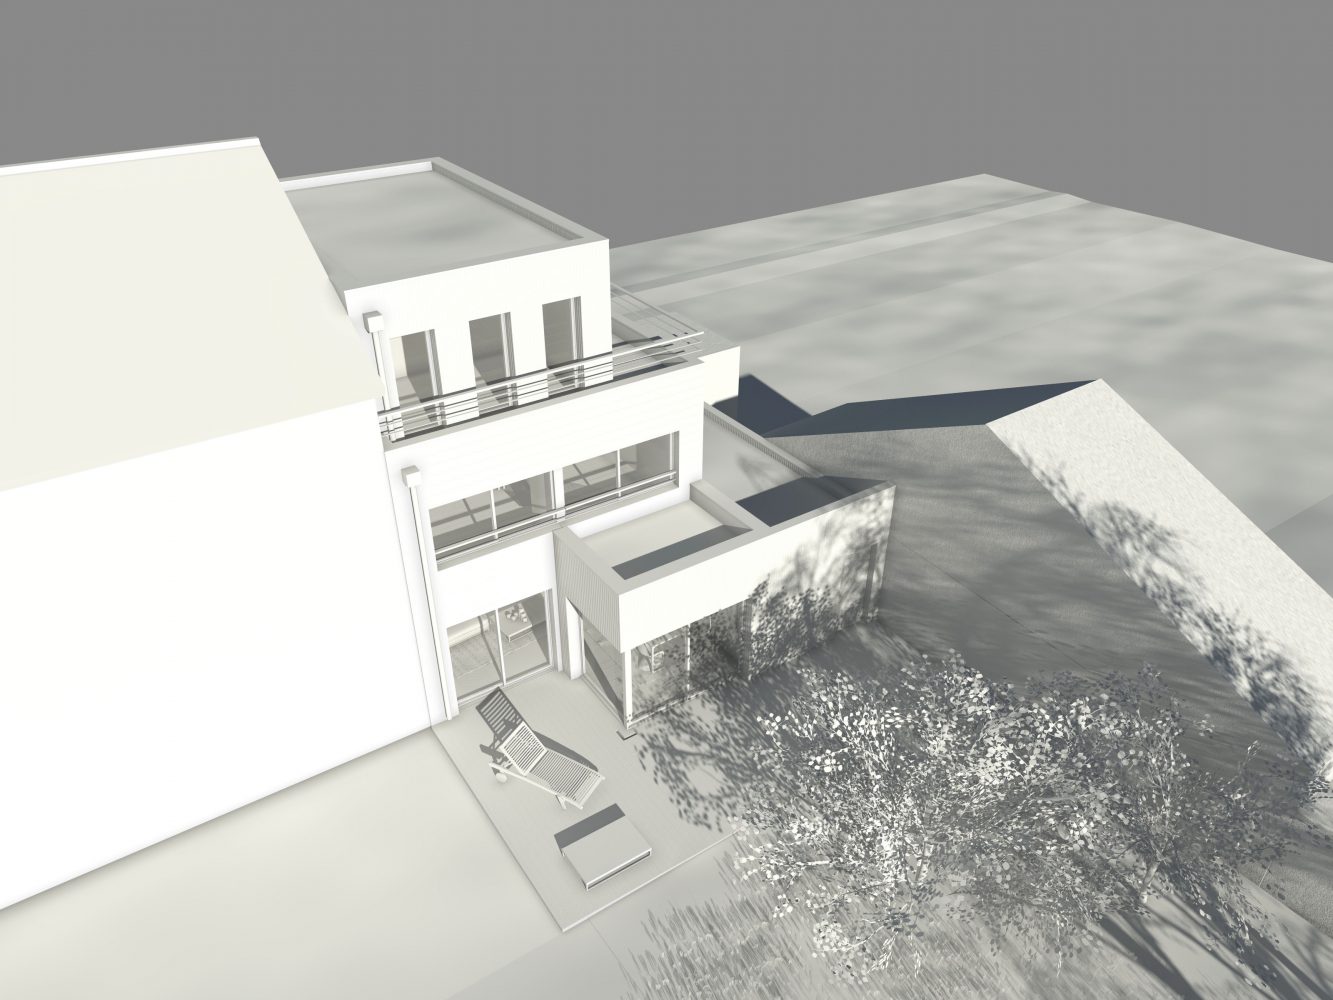 Philippe_Zerbib_Architecte_construction_maisons_ossature_bois_projet_maison-Vollaire-View 10_8